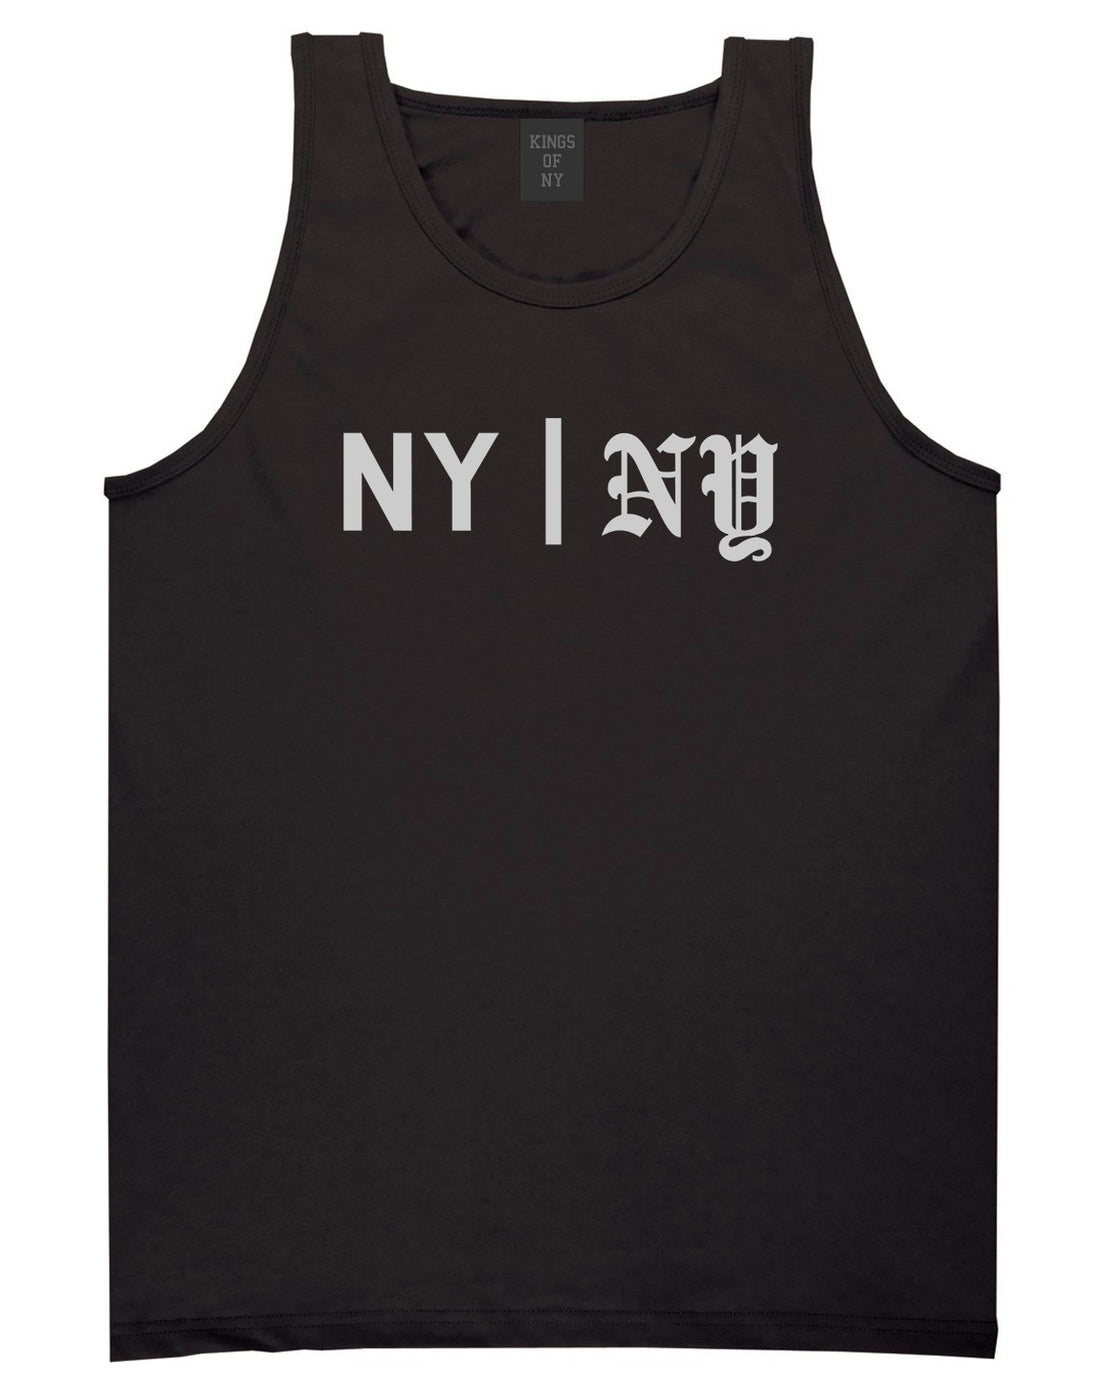 NY vs NY Mens Tank Top Shirt Black